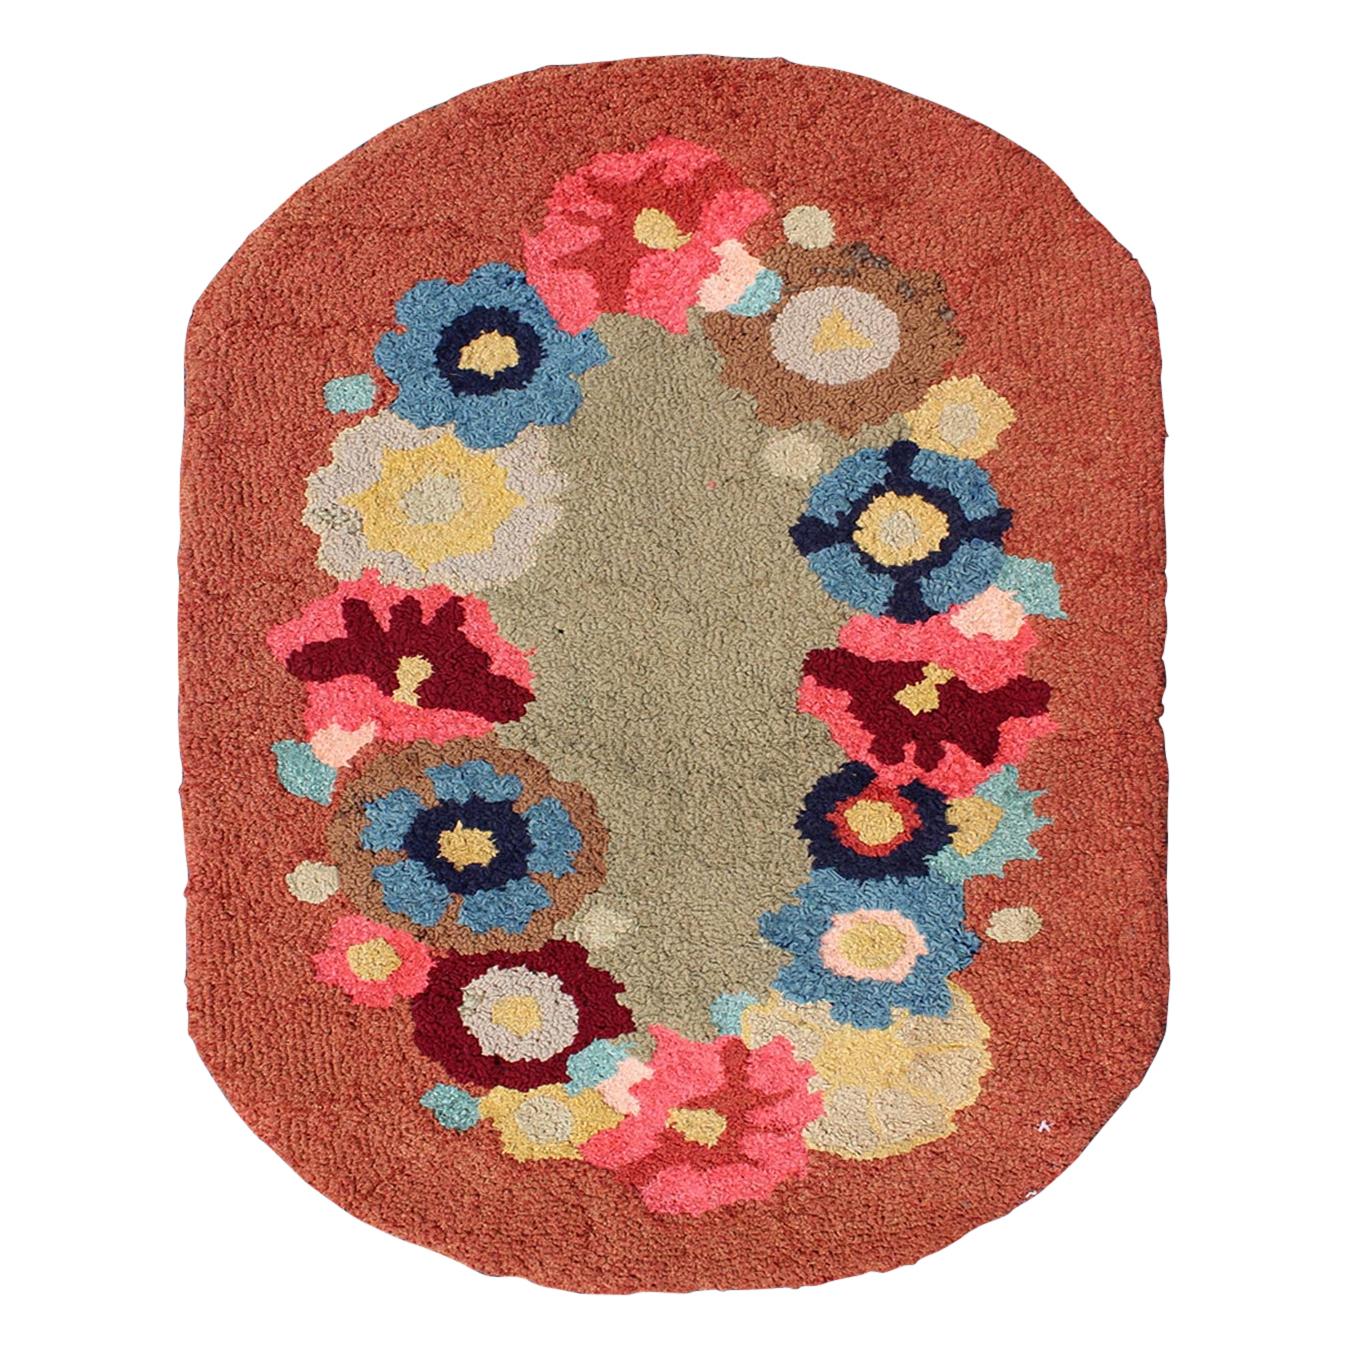 Ovaler amerikanischer Vintage-Teppich mit Kapuze und großem Blumenmuster